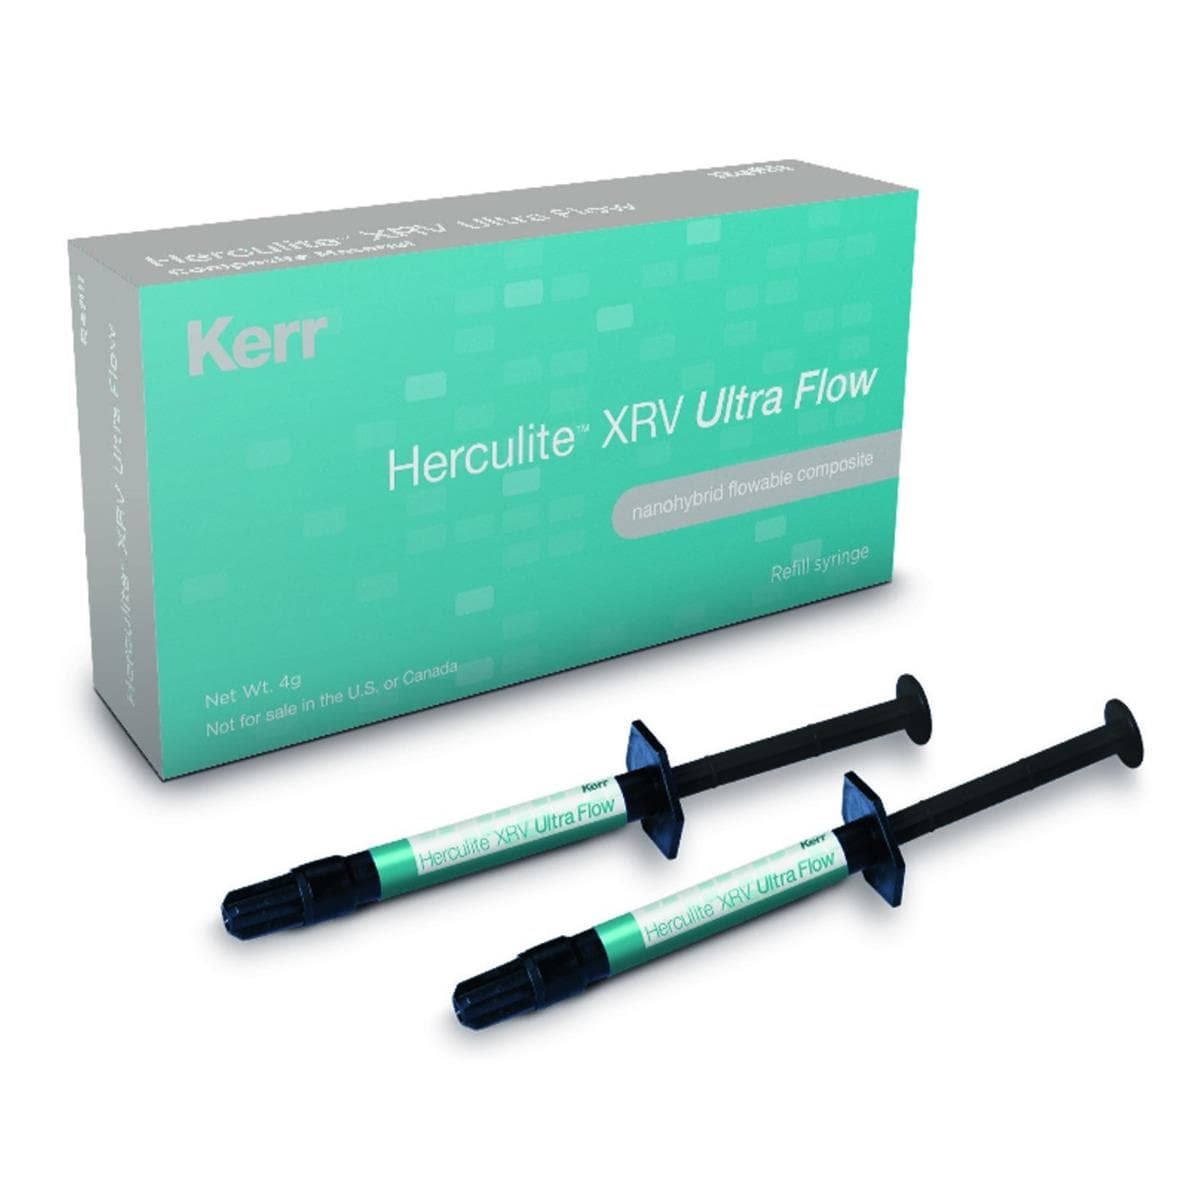 Herculite XRV Ultra Flow KERR - A3,5 - Seringue de 2g - Bote de 2